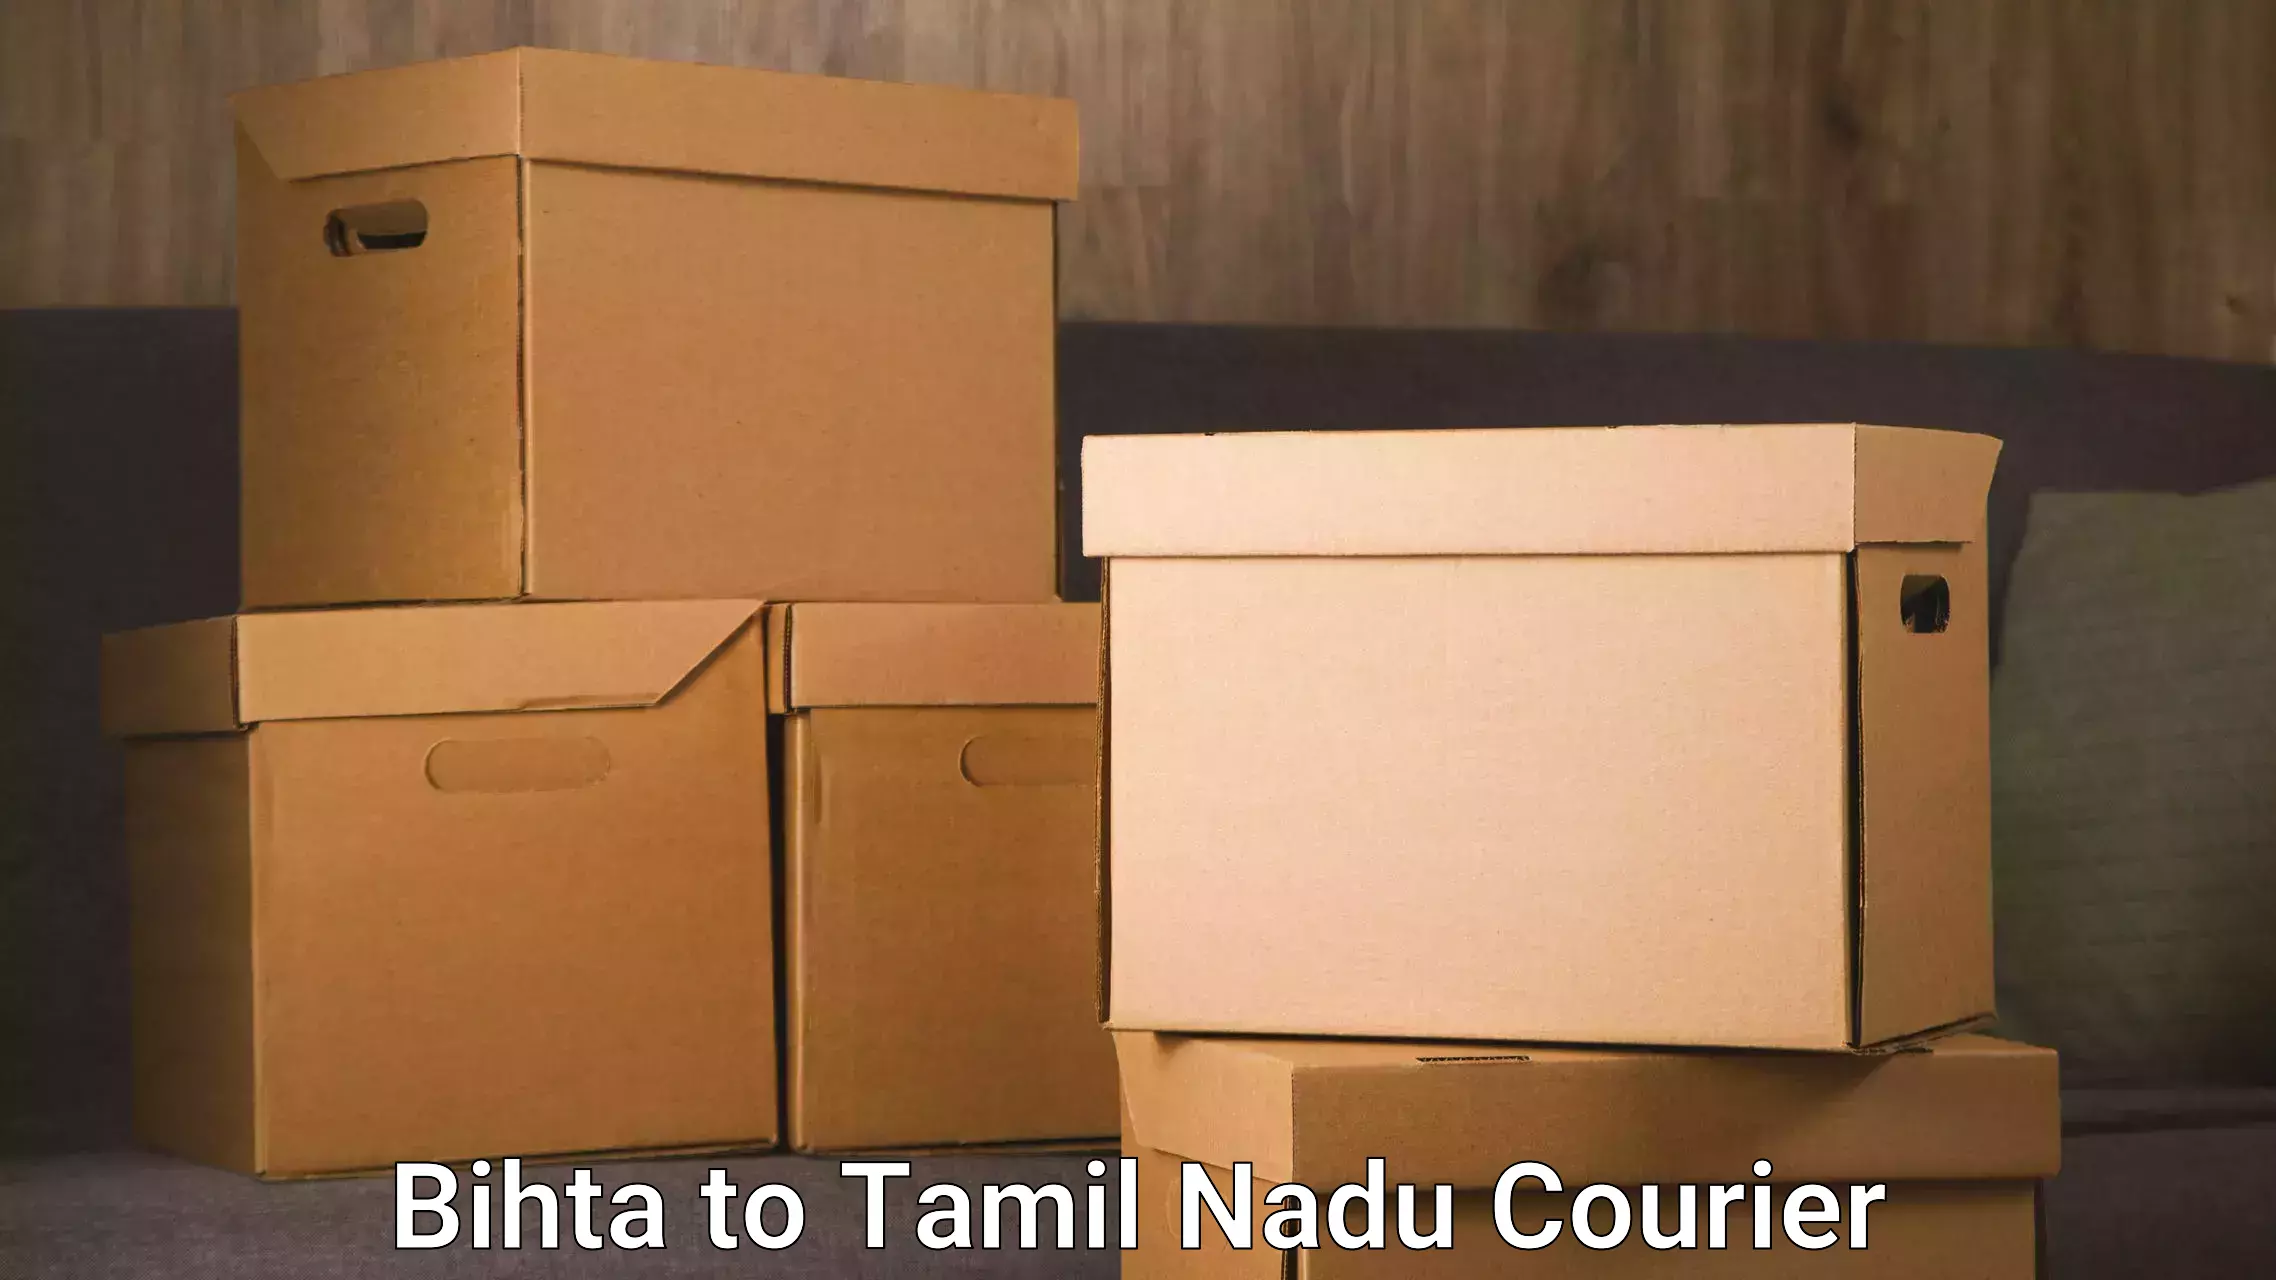 Residential furniture transport Bihta to Perundurai